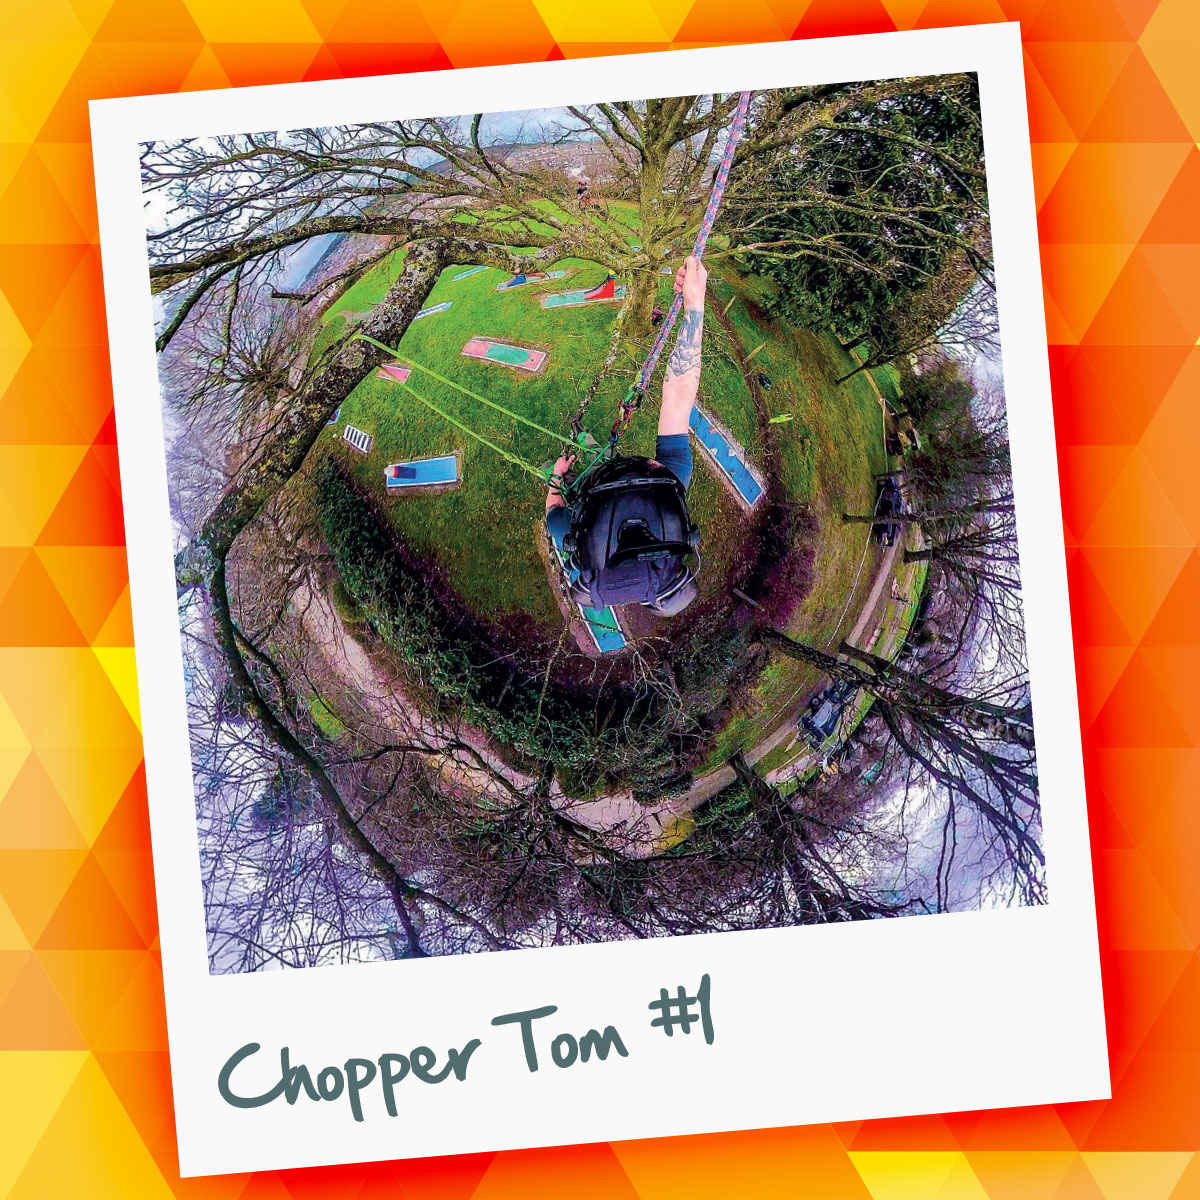 Chopper Tom #1